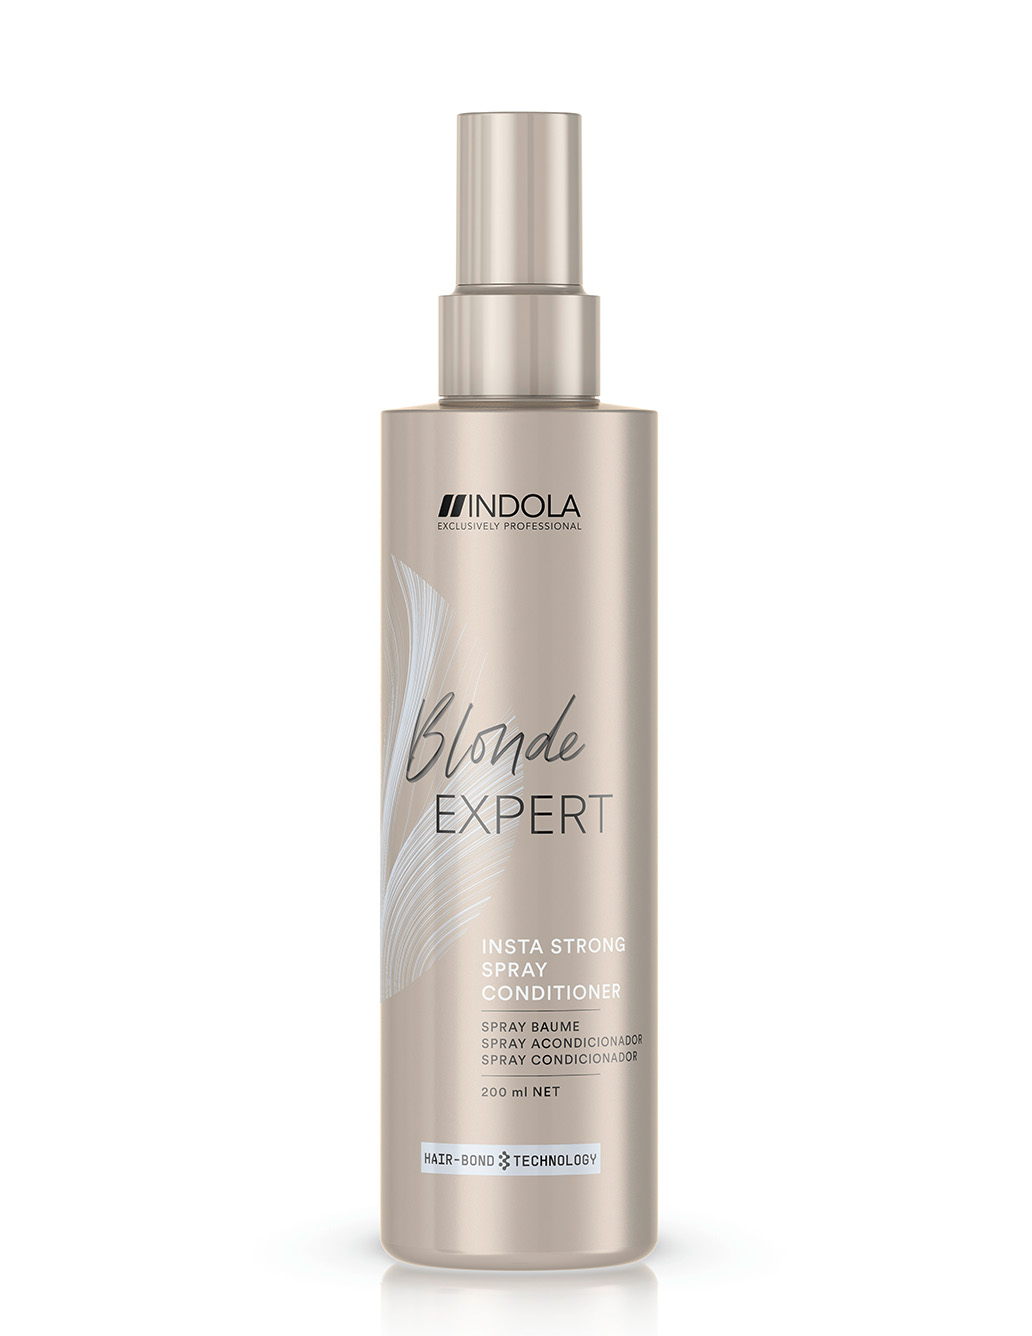 Indola Blonde Expert Insta Strong odżywka w sprayu do włosów blond 200ml